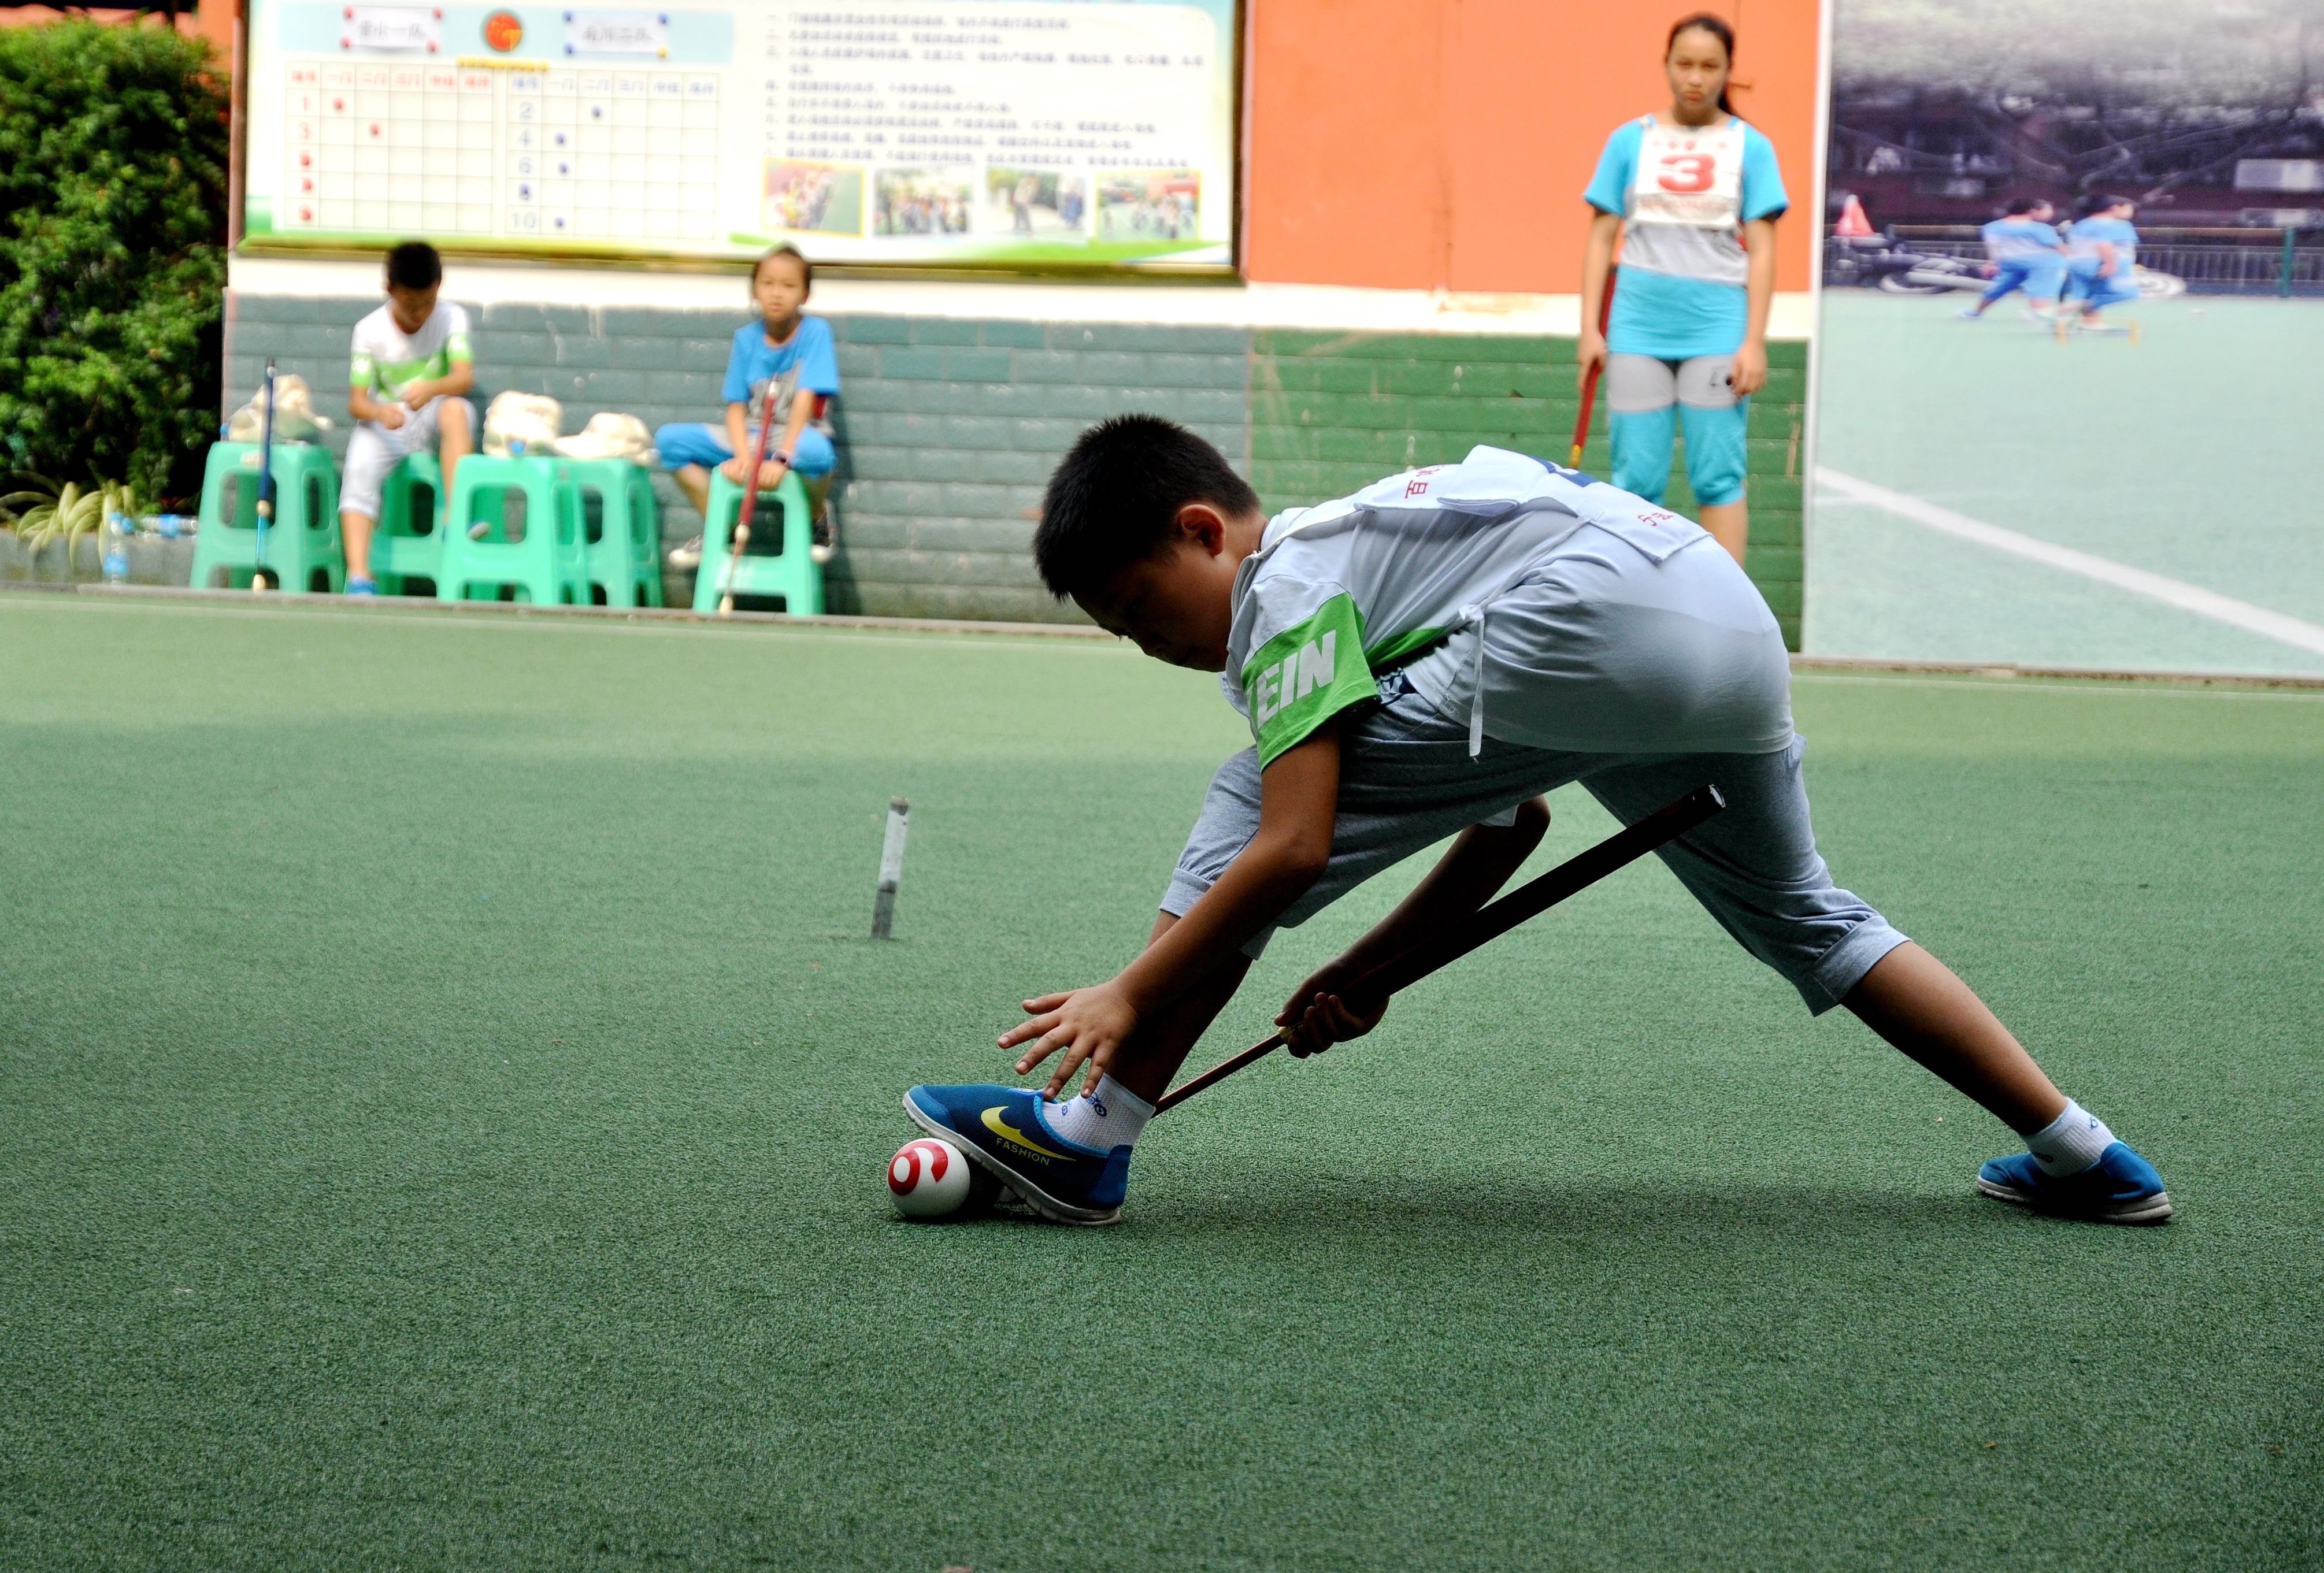 重庆市青少年门球赛在綦江营盘山小学举行